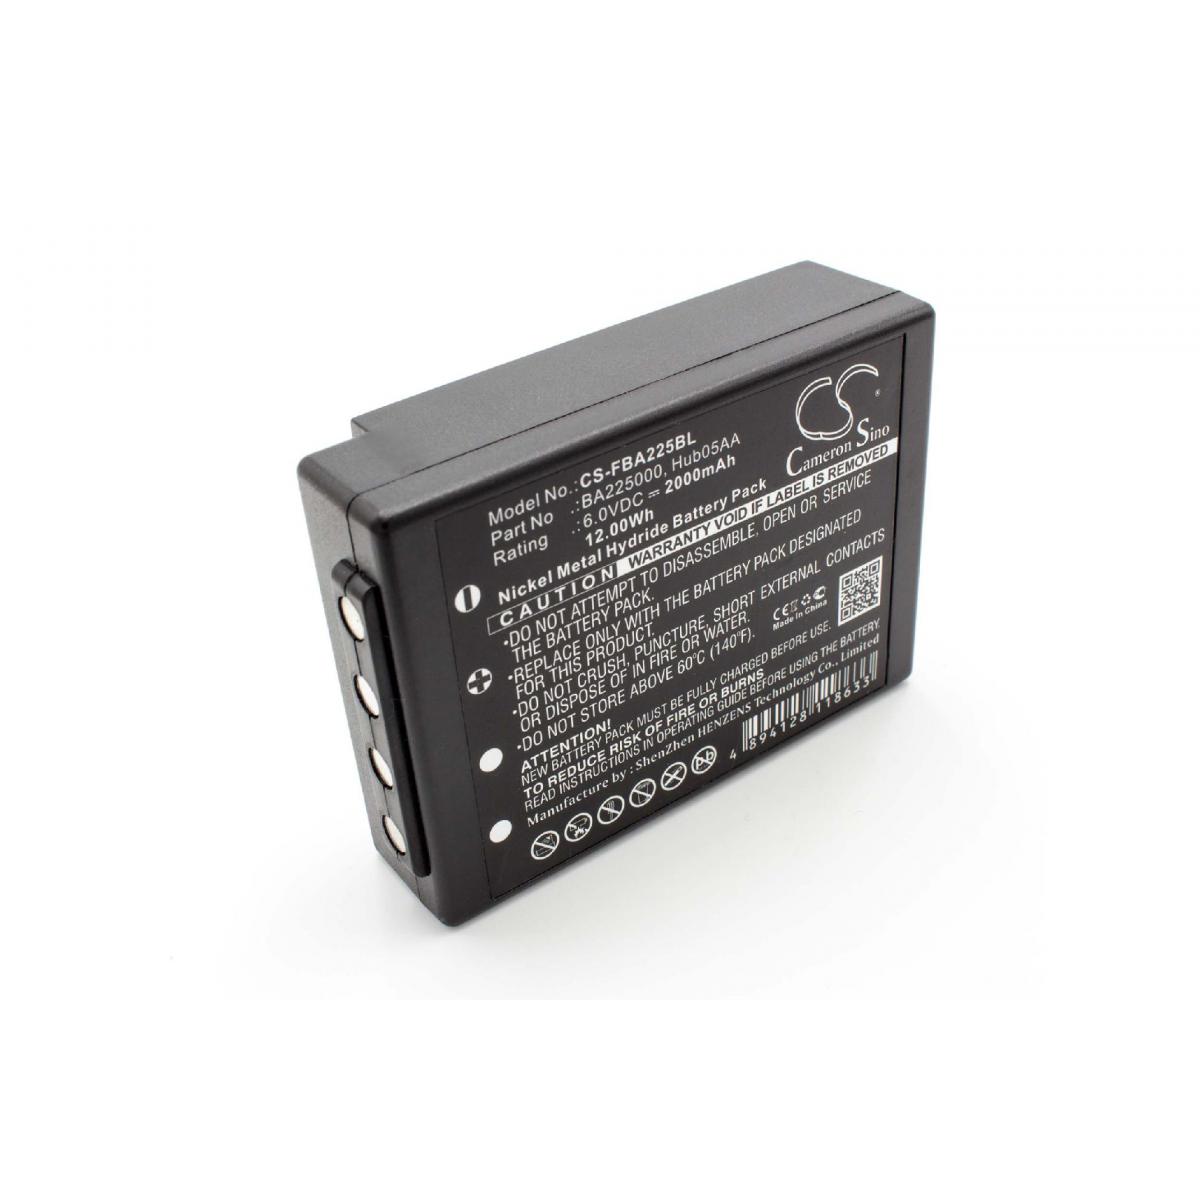 Vhbw - vhbw Batterie compatible avec HBC Spectrum A, B, 1, 2 télécommande industrielle (2000mAh, 6V, NiMH) - Autre appareil de mesure